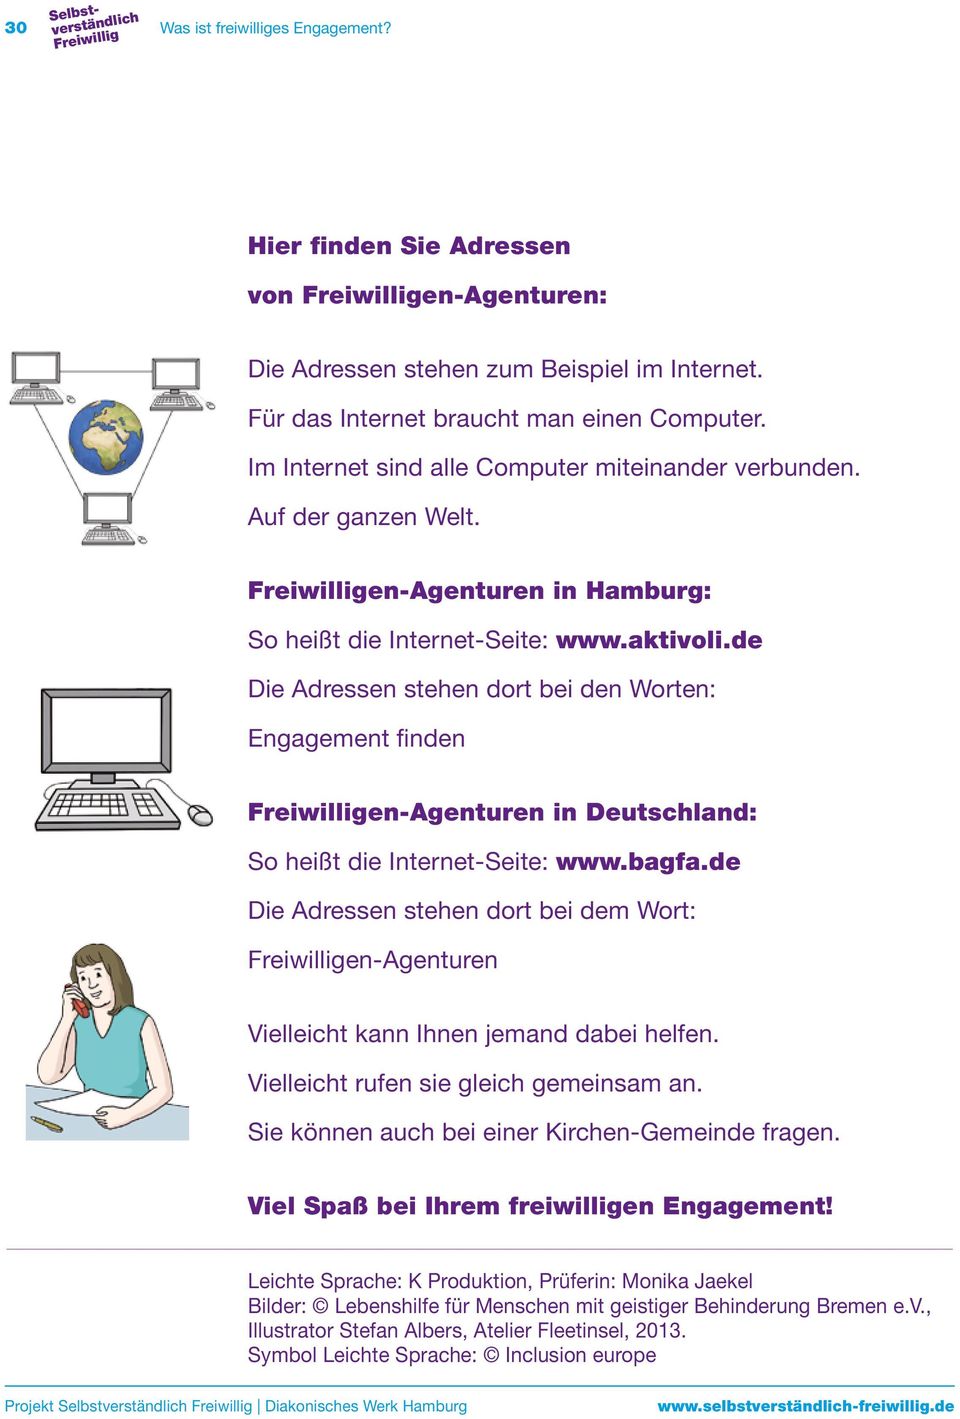 de Die Adressen stehen dort bei den Worten: Engagement finden en-agenturen in Deutschland: So heißt die Internet-Seite: www.bagfa.